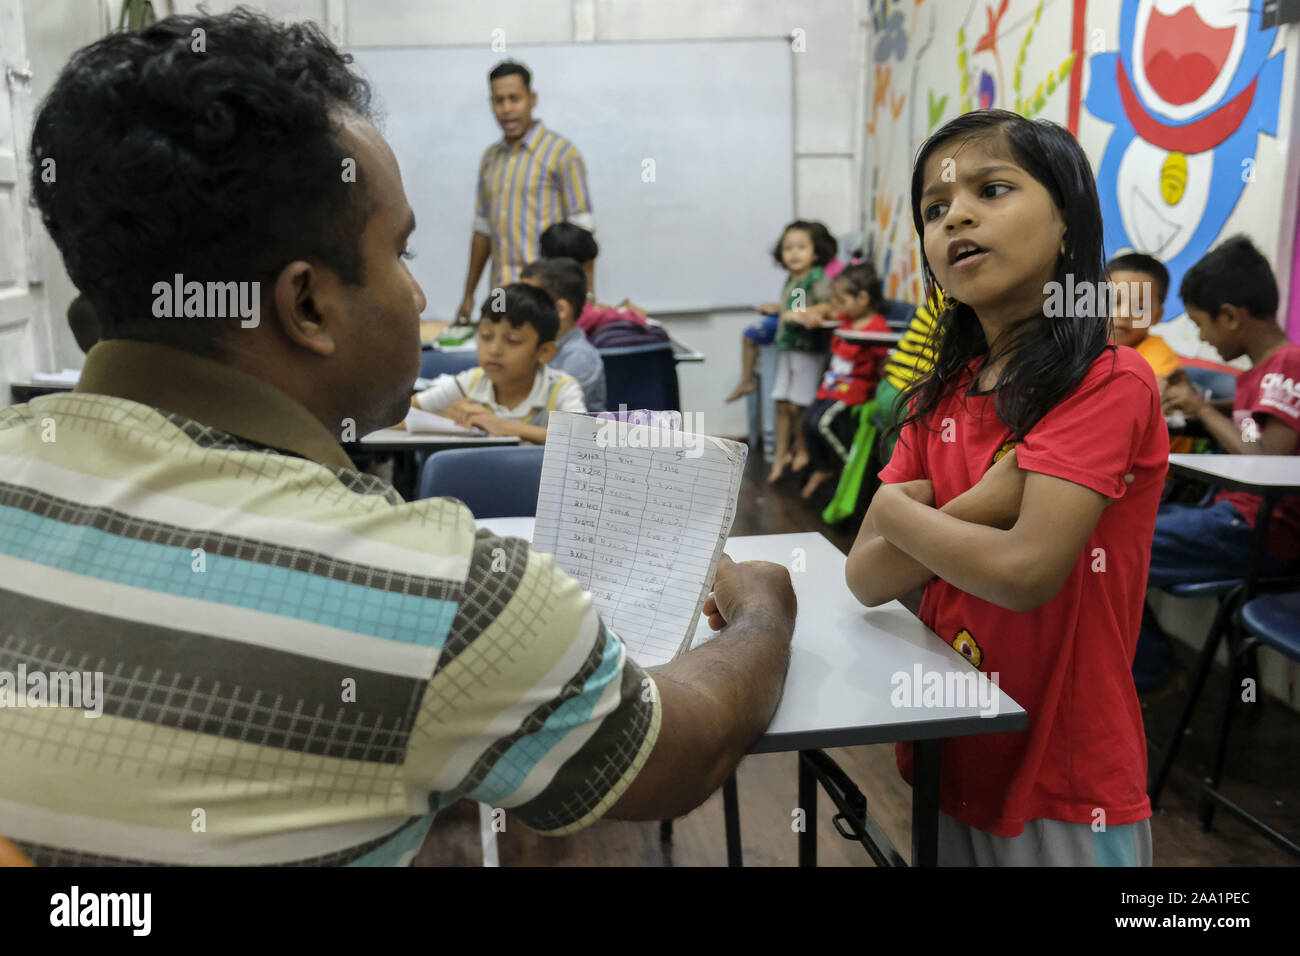 Kuala Lumpur, Selangor, Malaysia. 11 Nov, 2019. Ein Mädchen, das Auswendiglernen des Einmaleins in Mathe Klasse an der Akademie. Rohingya English Academy ist ein Learning Center, die freie Bildung auf die Rohingya-flüchtlinge sowohl für Kinder als auch für Erwachsene bietet, wurde es von Saif Ullah ein rohingya Bürger leben in Malaysia und auch ein englischer Tutor an der Akademie Wer erhält keine Unterstützung von der Regierung gegründet. Malaysia hat mehr als 177,690 registrierte Flüchtlinge und Asylsuchenden Rohingya Nach UNHCR-Statistik und 45,470 davon sind Kinder unter 18 Jahren. (Bild: © FARIS H Stockfoto